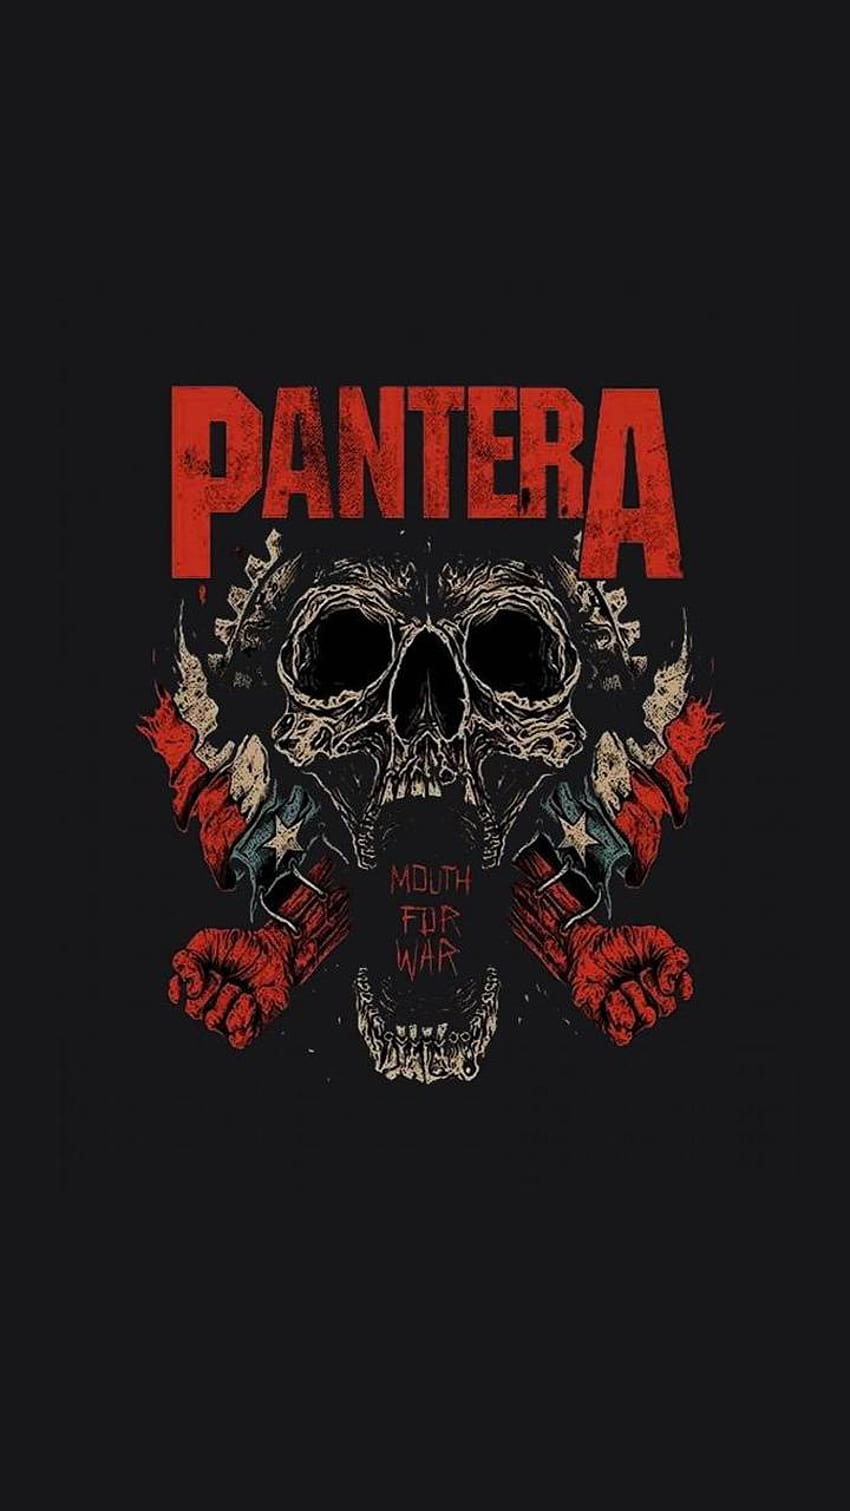 Pin by Dawn Price on Pantera  Rock poster art Heavy metal music Pantera